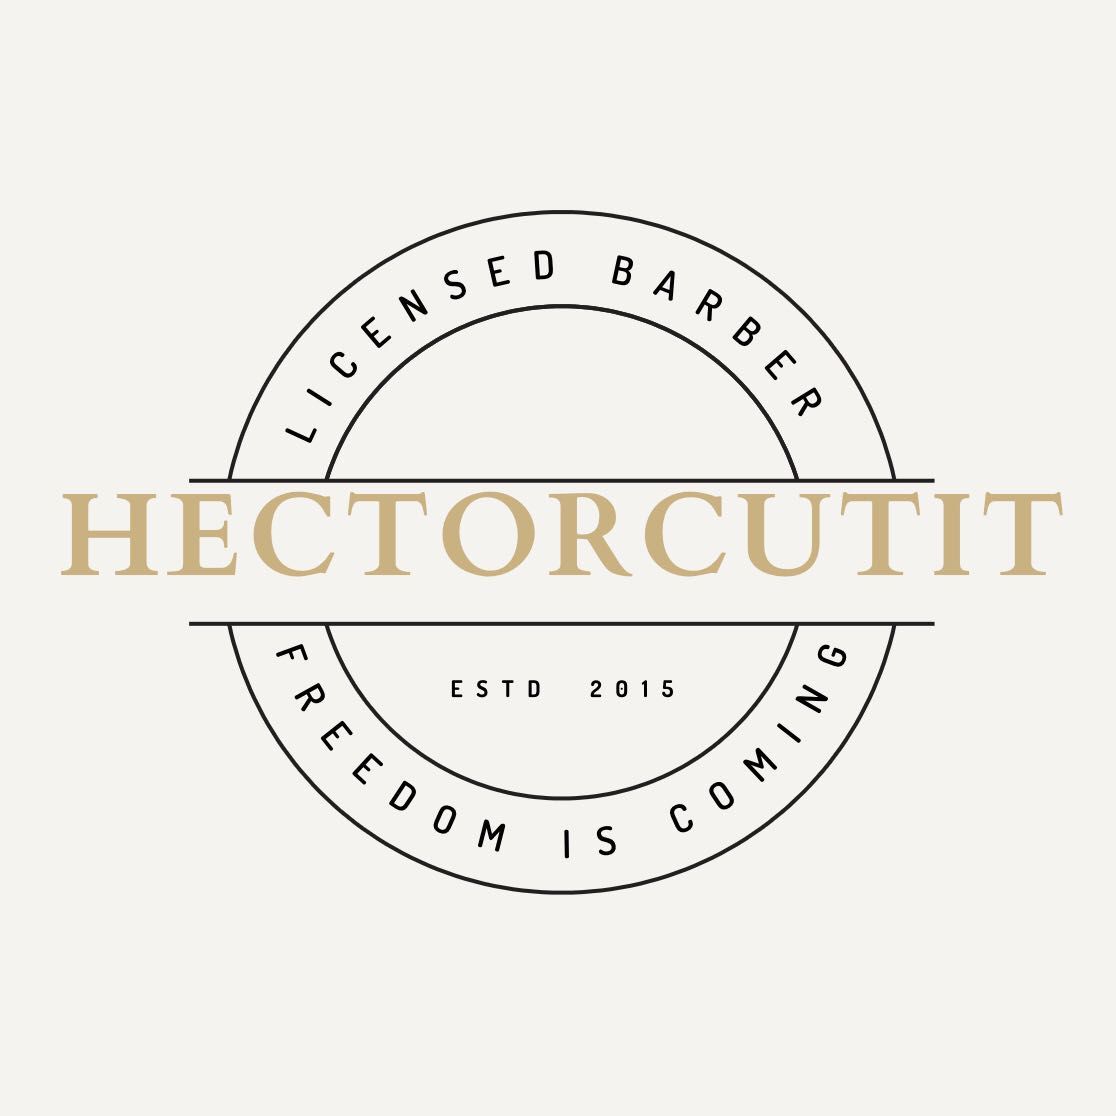 Hectorcutit, 1408 Gay Rd, Studio 24, Winter Park, 32789